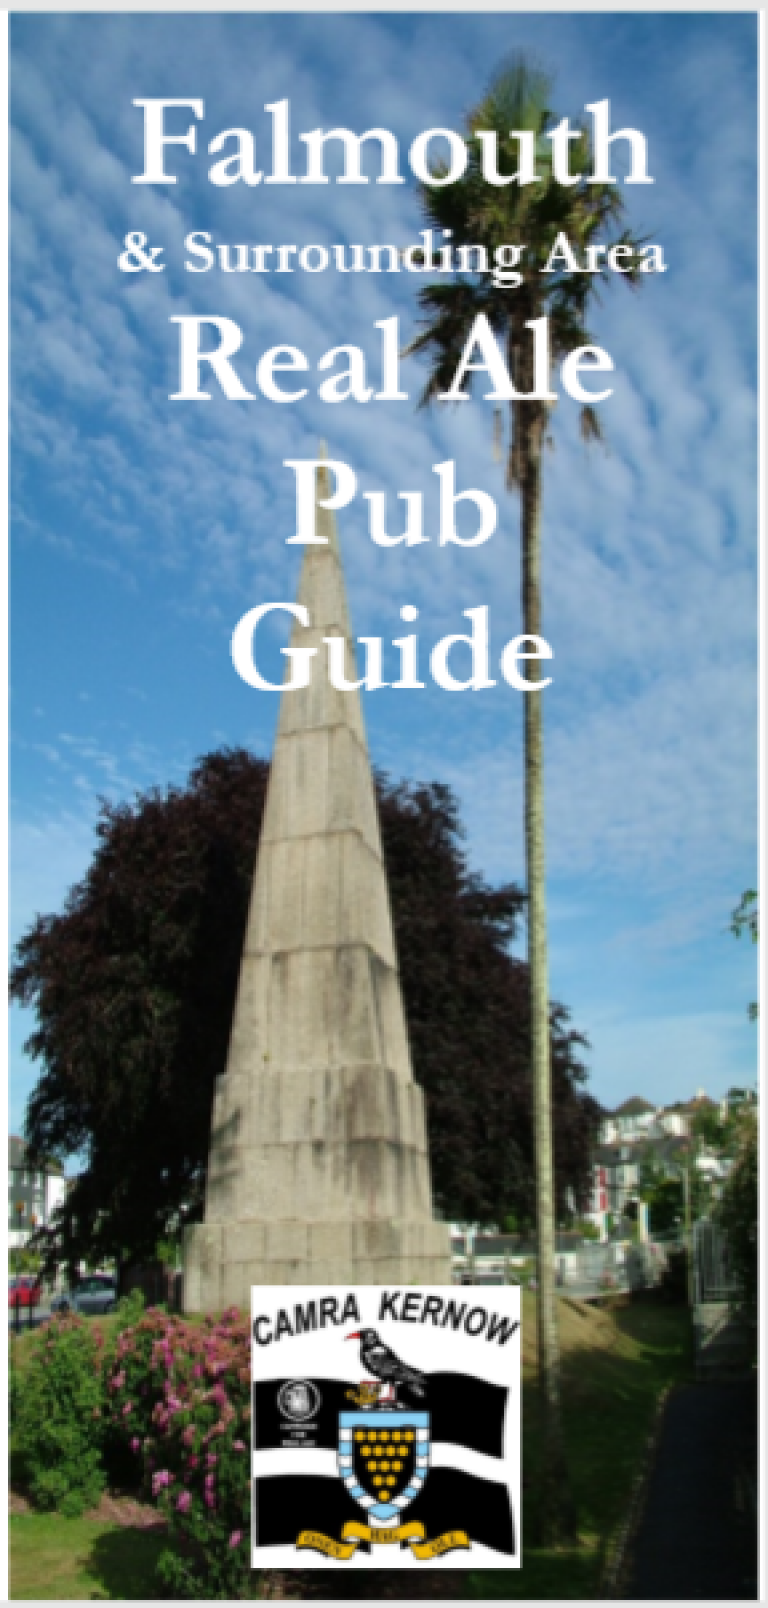 Falmouth Real Ale Pub Guide 